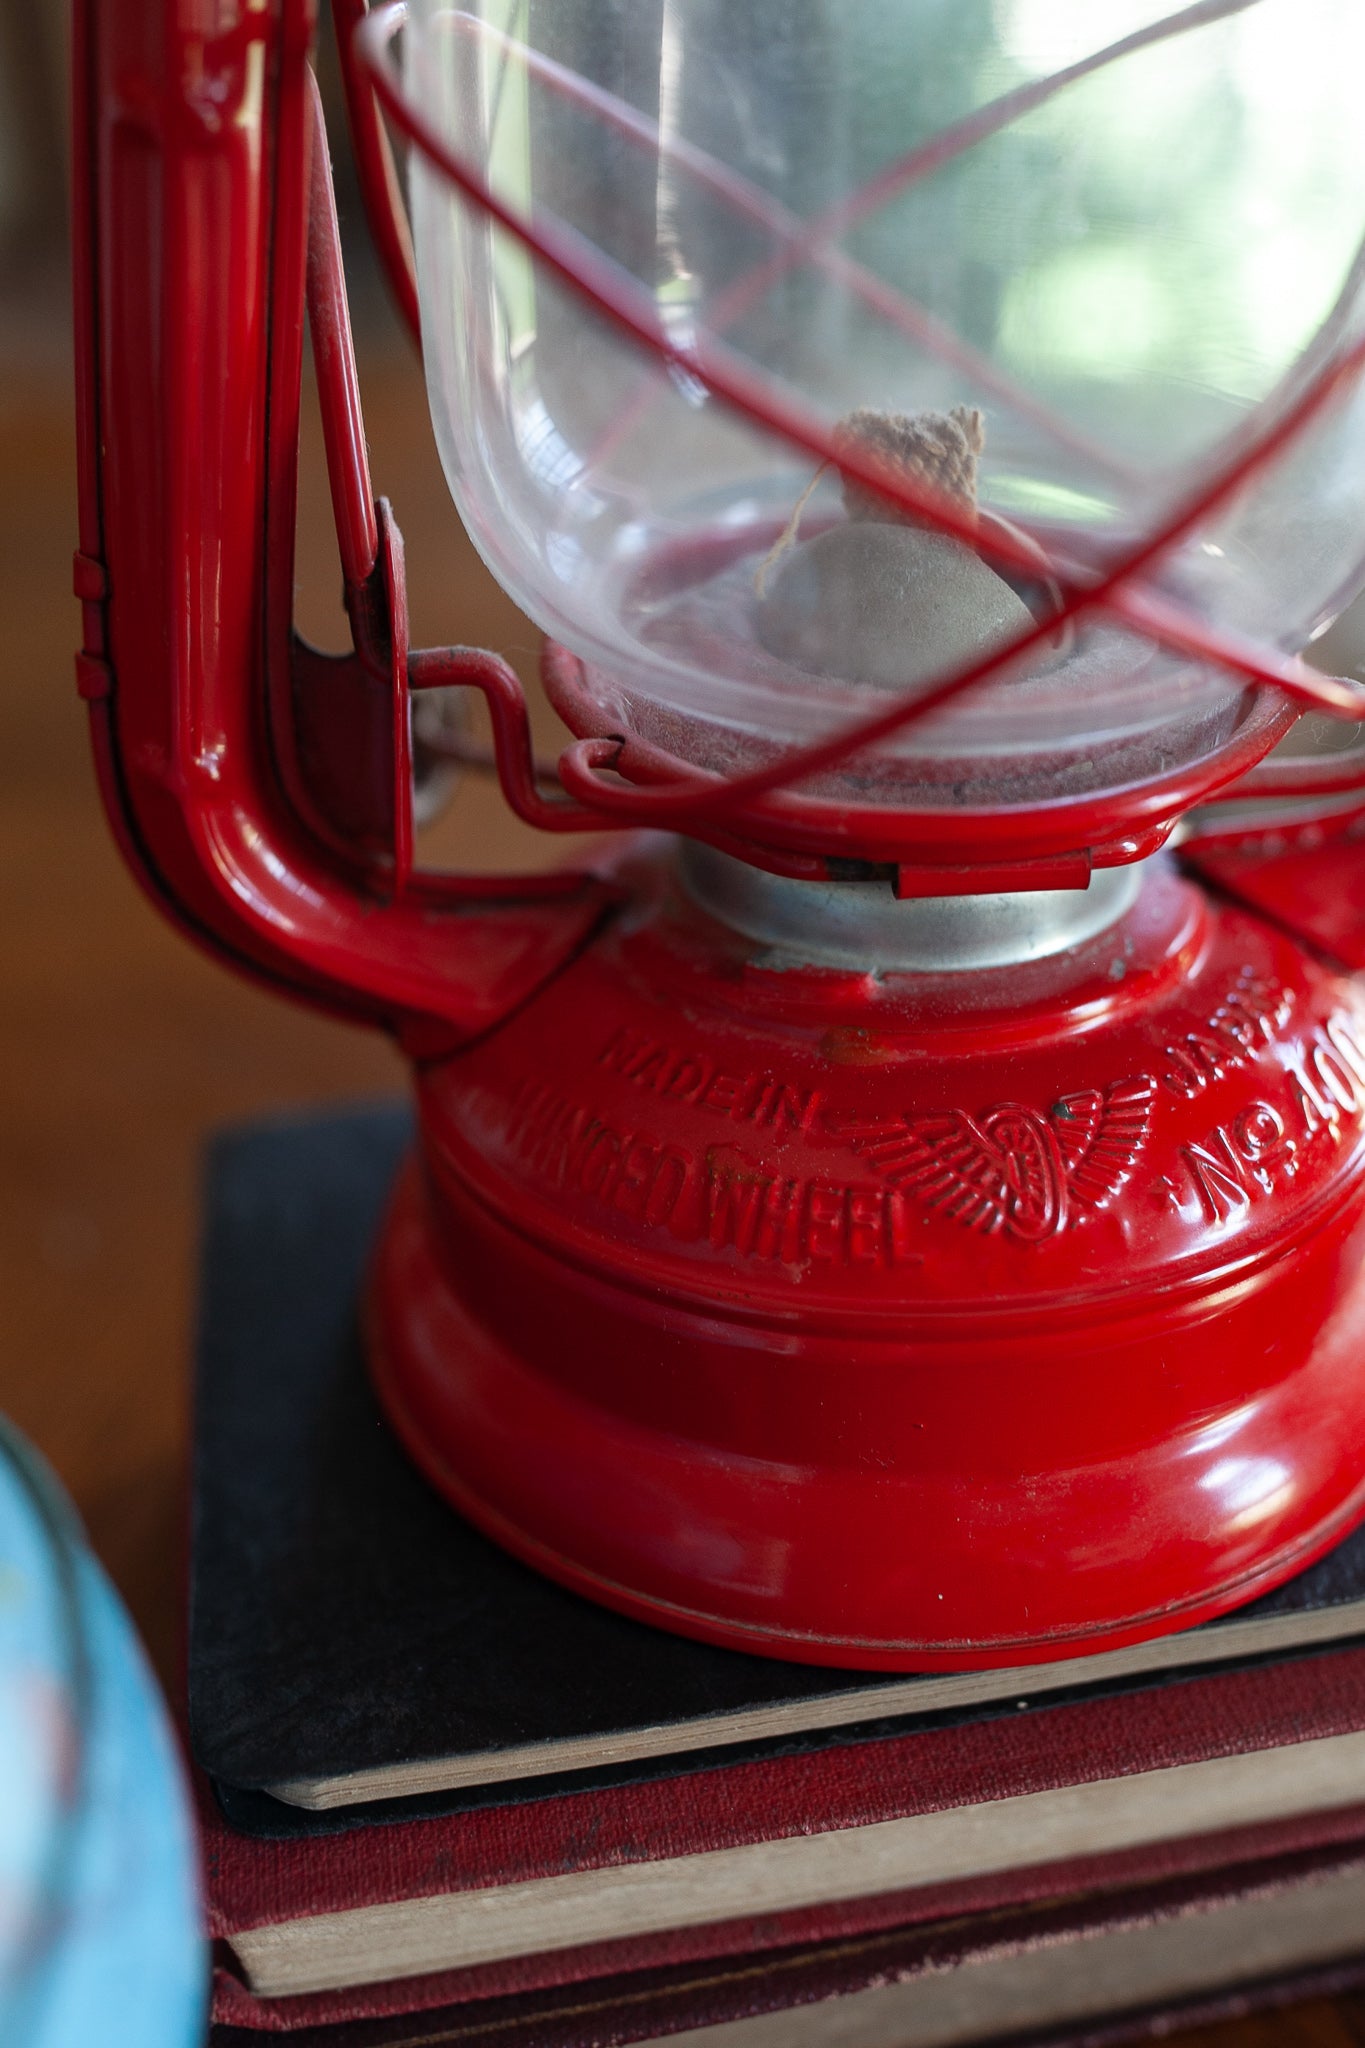 Lantern- Red Vintage Lantern -Winged Wheel No 400 Lantern, Made in Japan, Kerosene Oil Lamp 9.5” Vintage